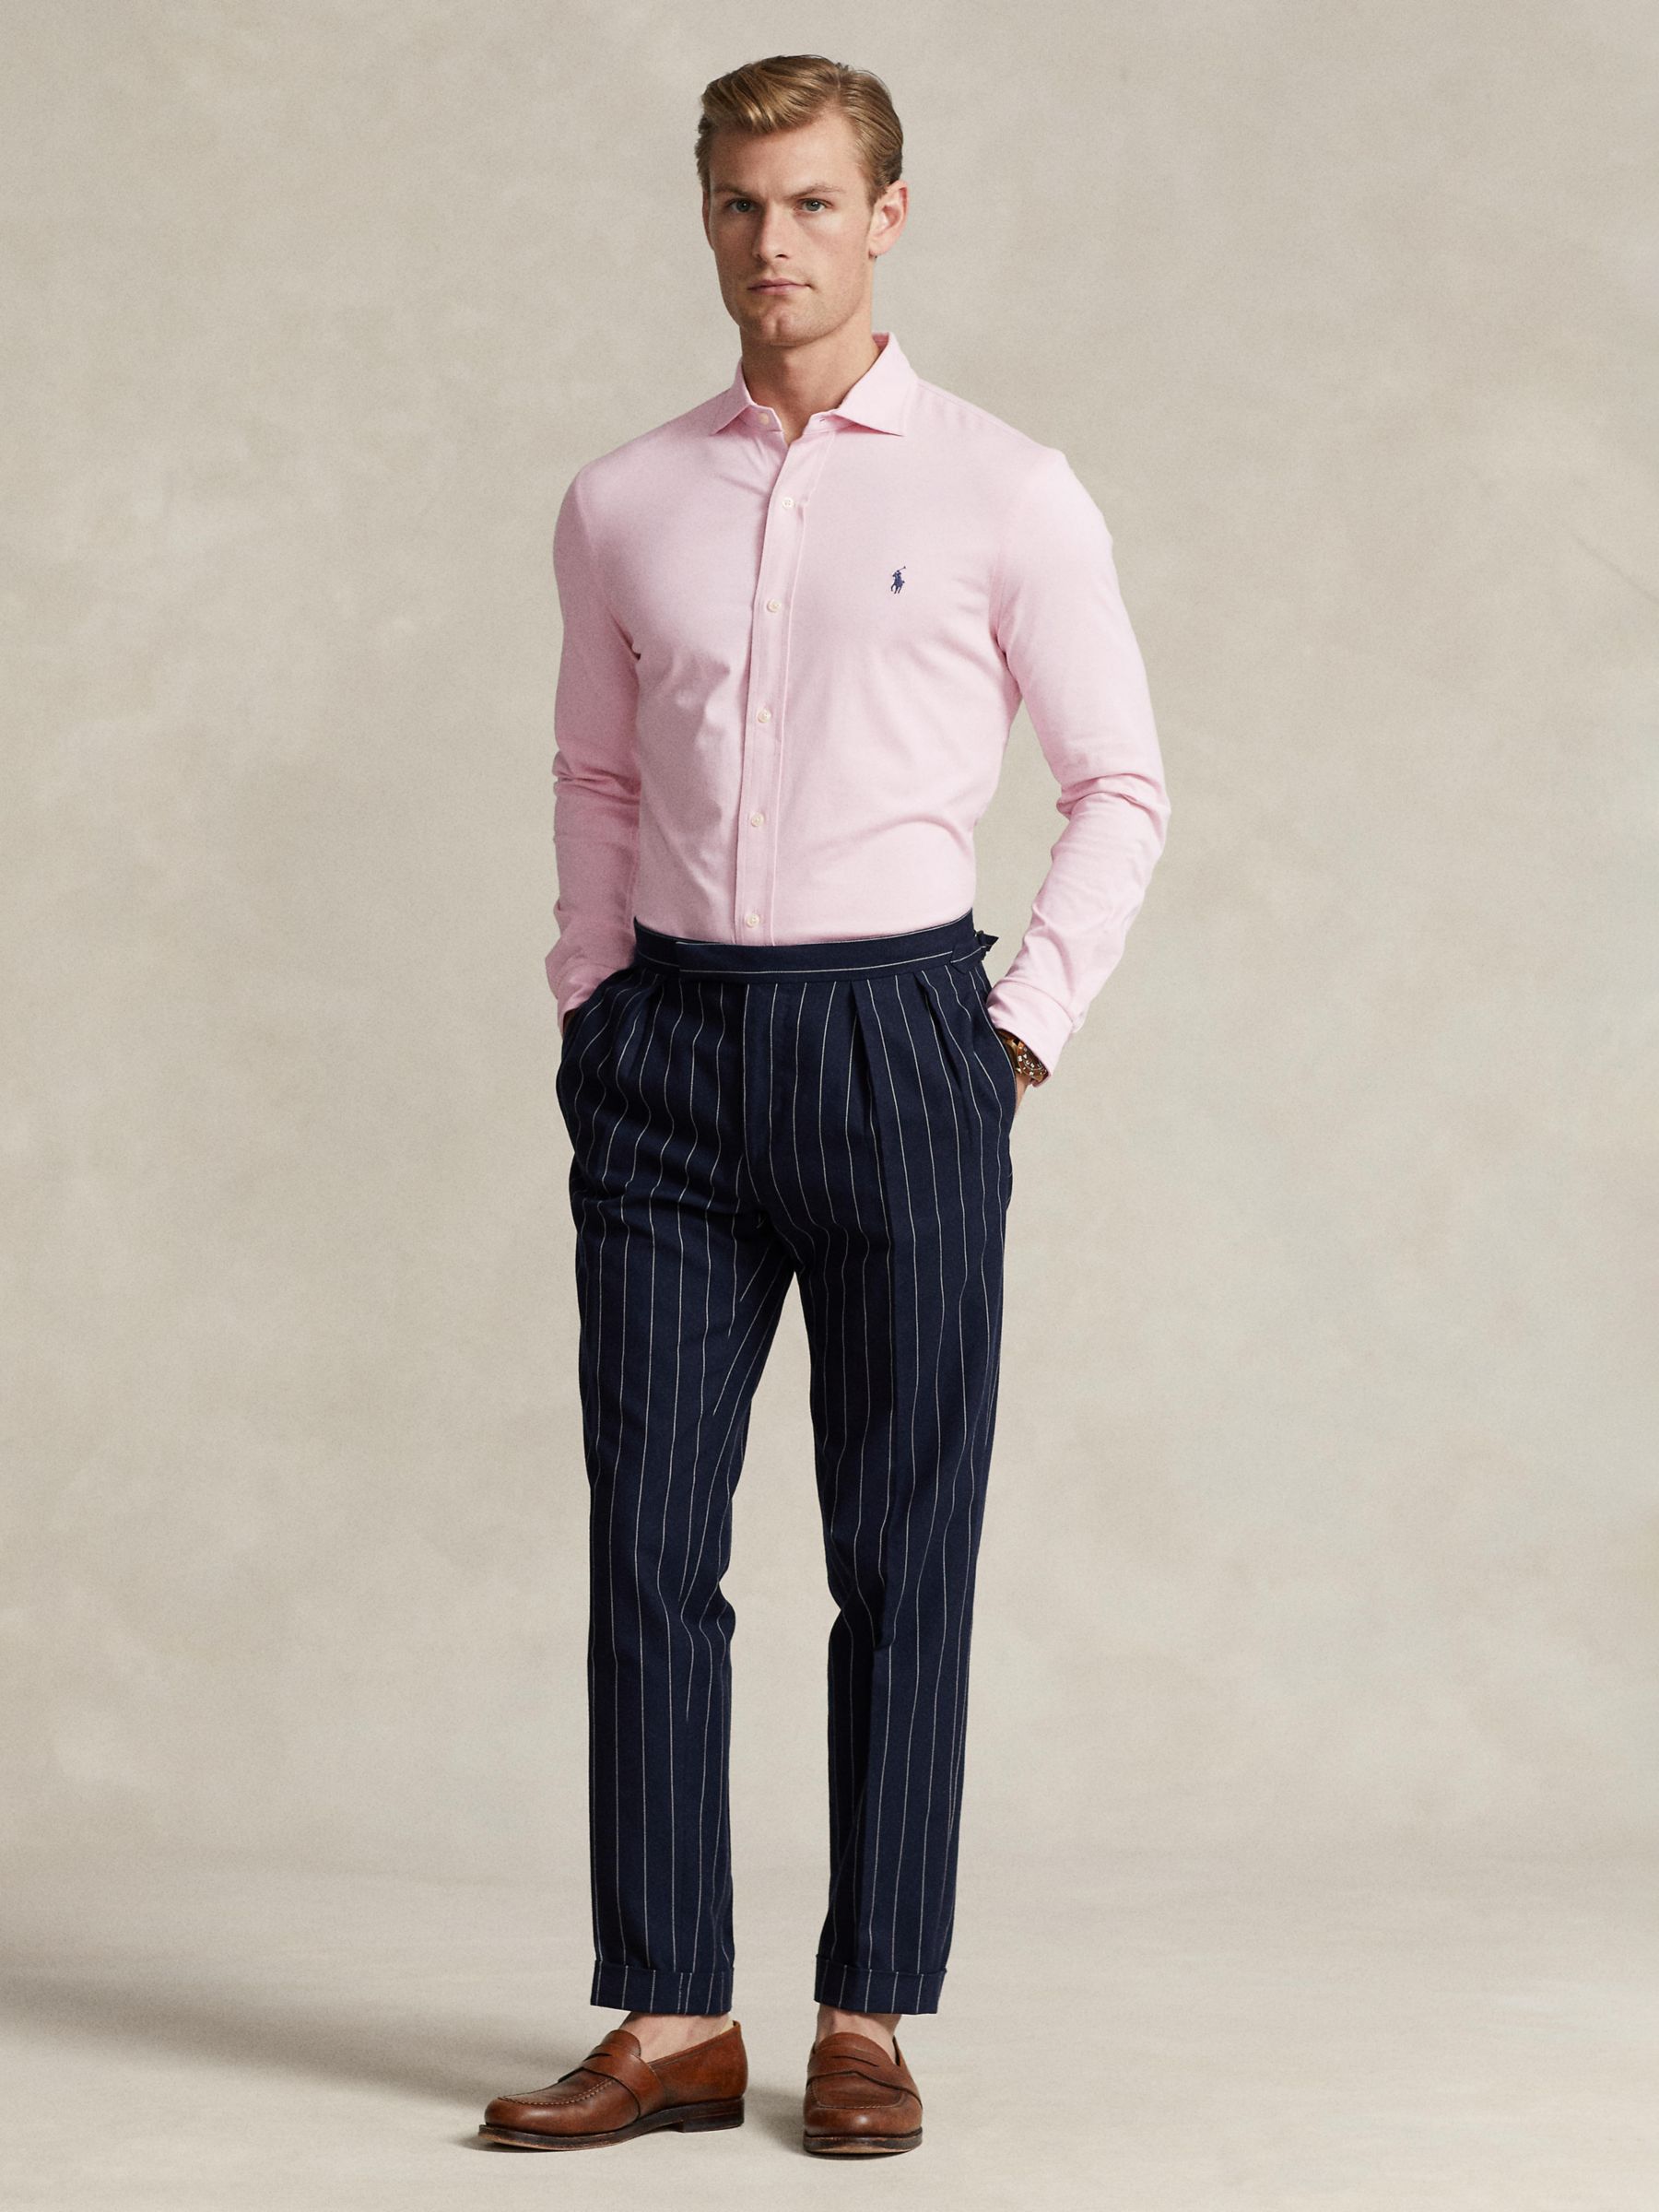 Buy Ralph Lauren Long Sleeve Jersey Shirt, Pink Online at johnlewis.com